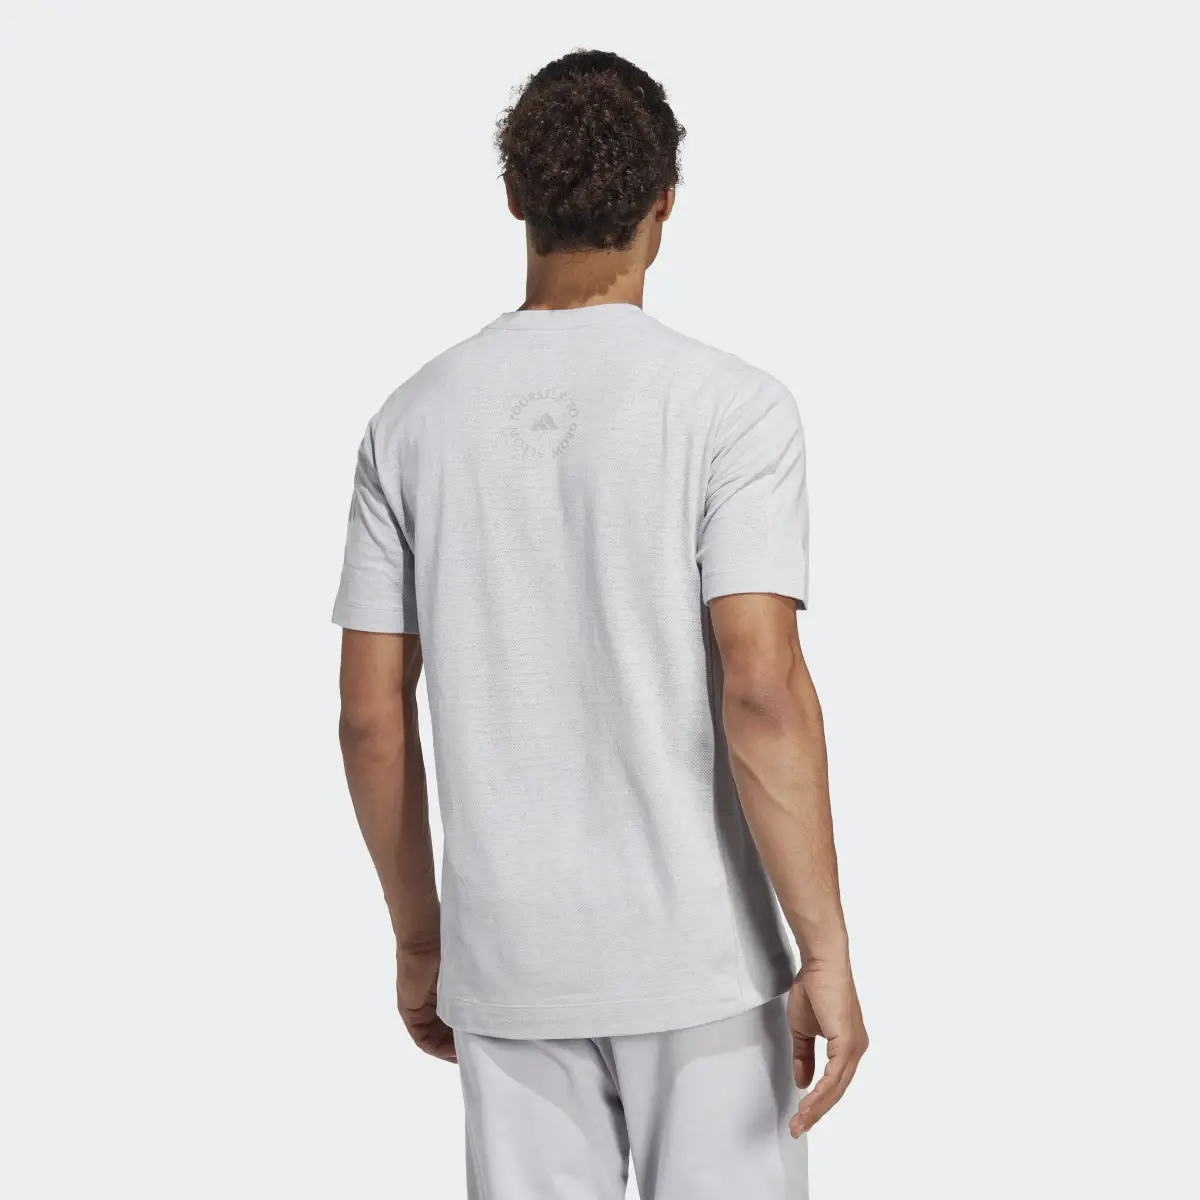 Adidas T-shirt de Ioga. 3